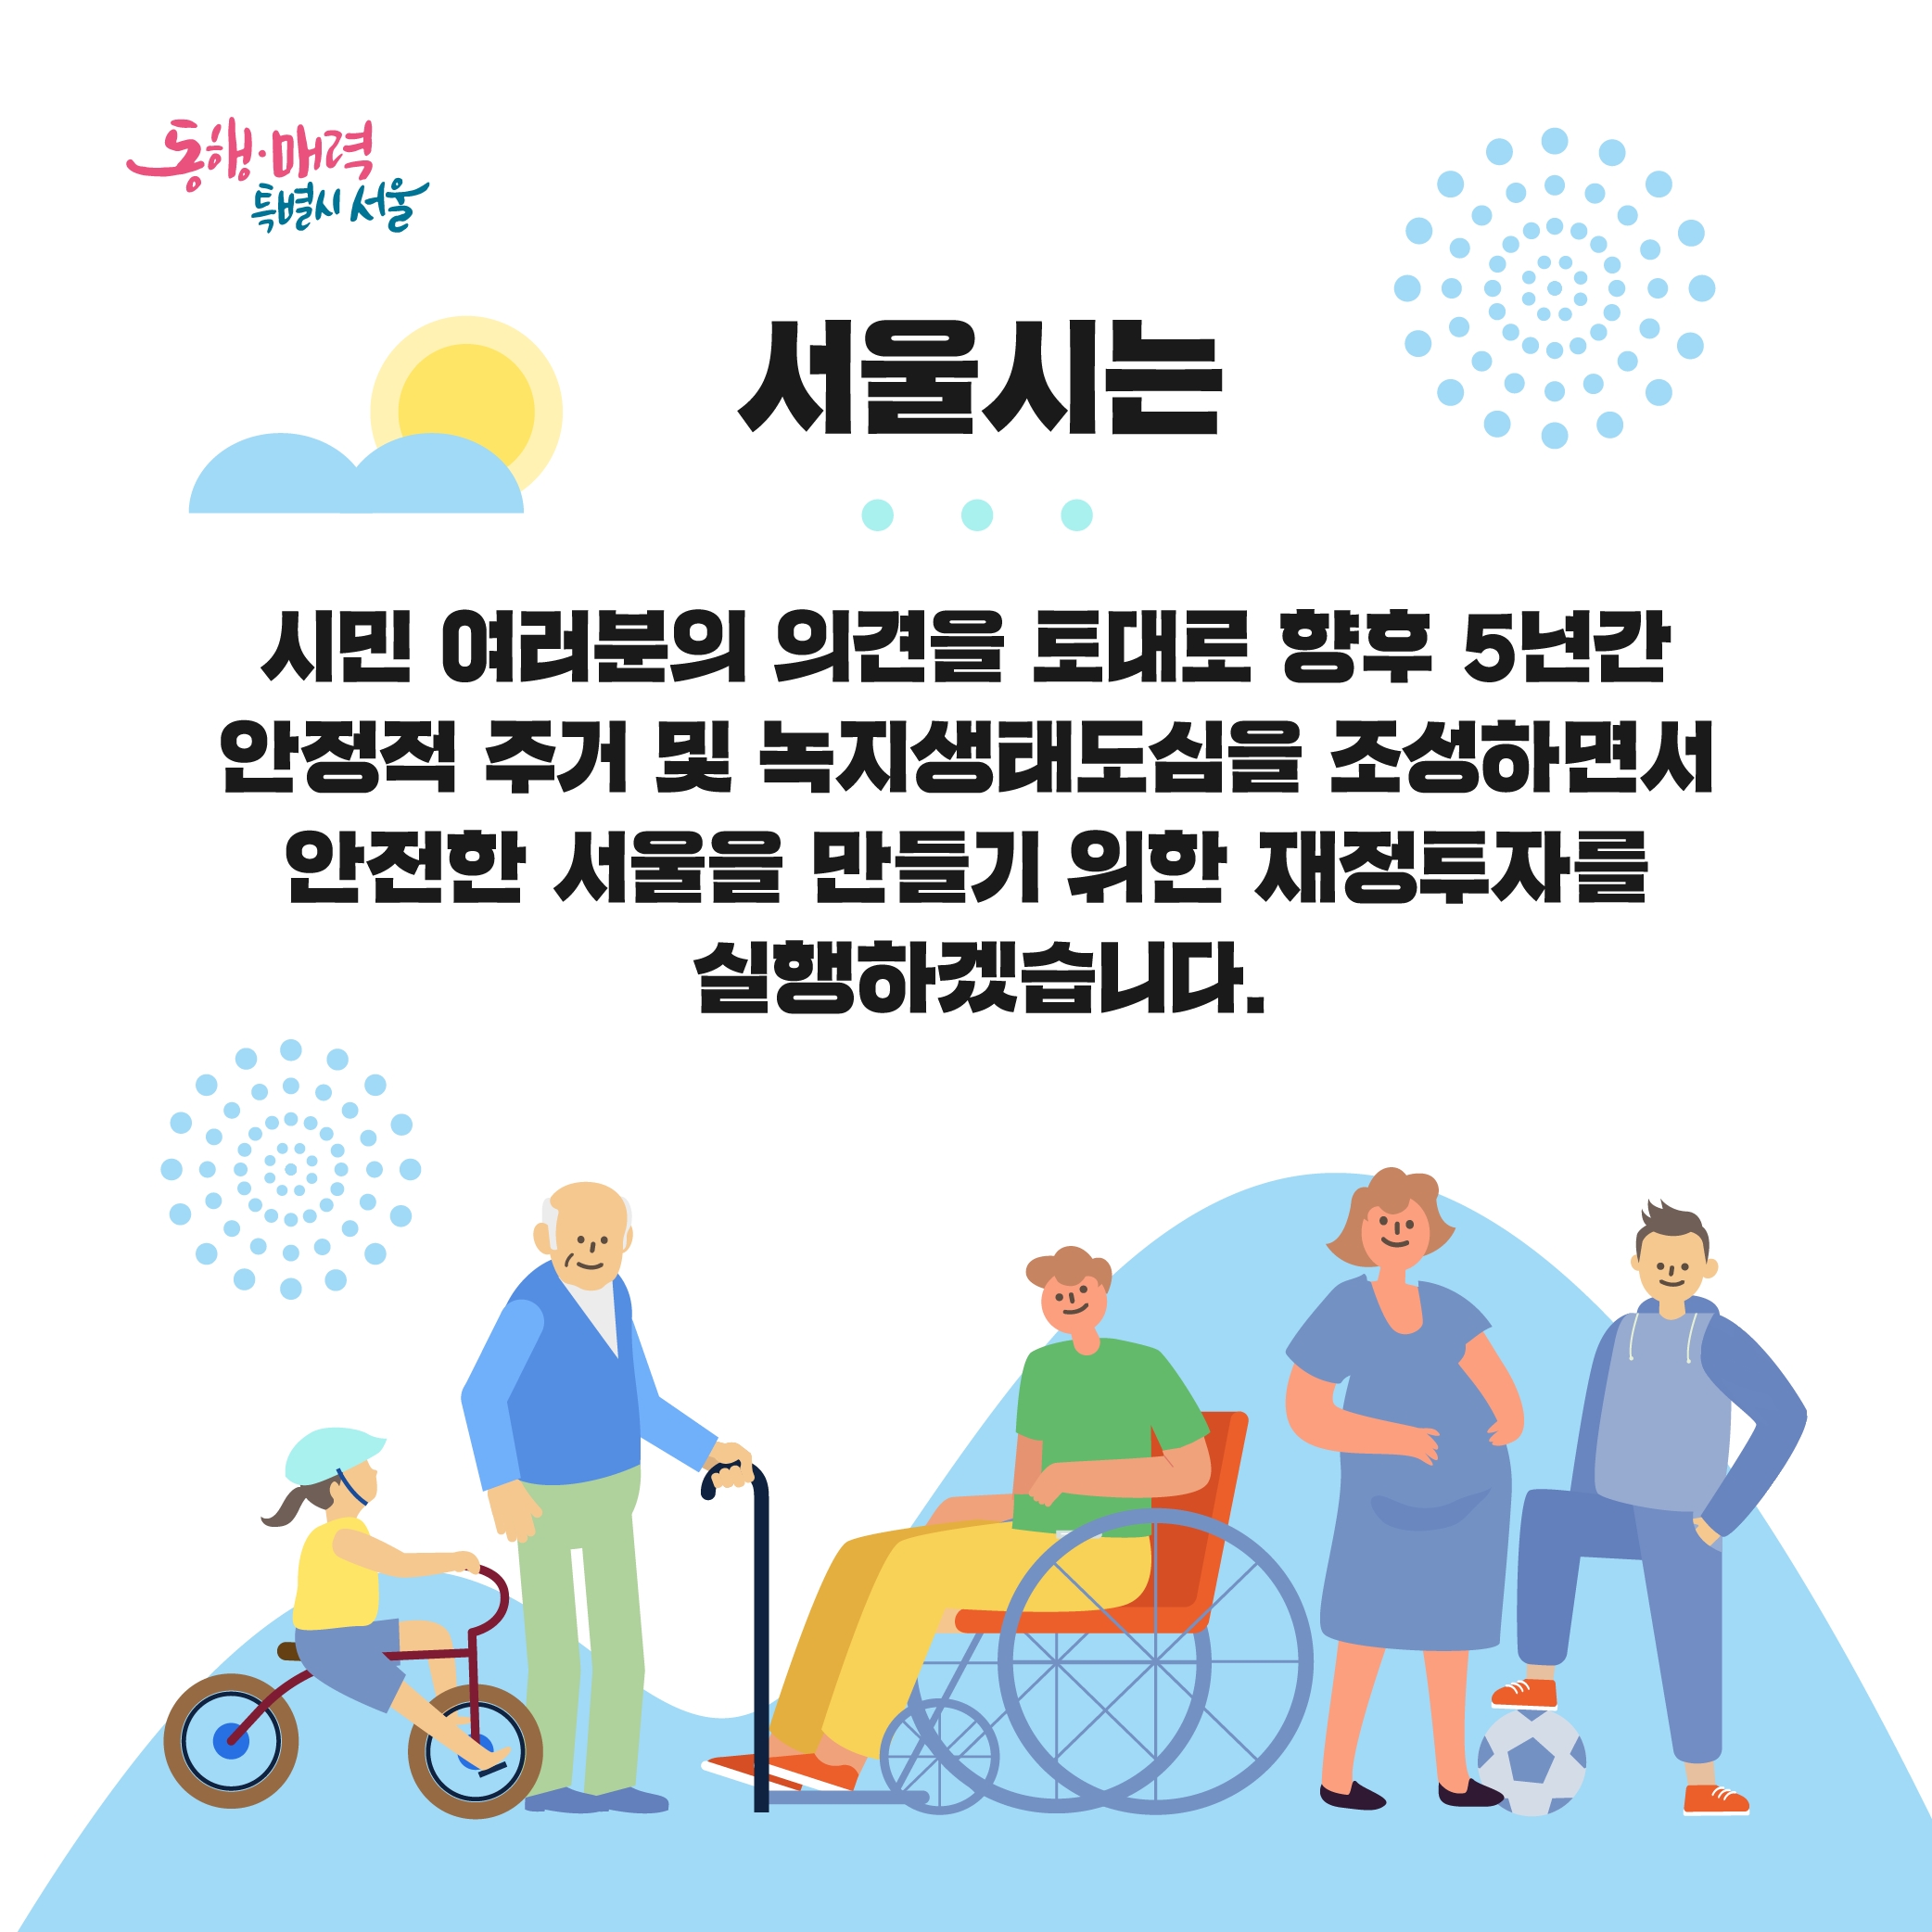 서울시는 시민 여러분의 의견을 토대로 향후 5년간 안정적 주거 및 녹지생태도심을 조성하면서 안전한 서울을 만들기 위한 재정투자를 실행하겠습니다.